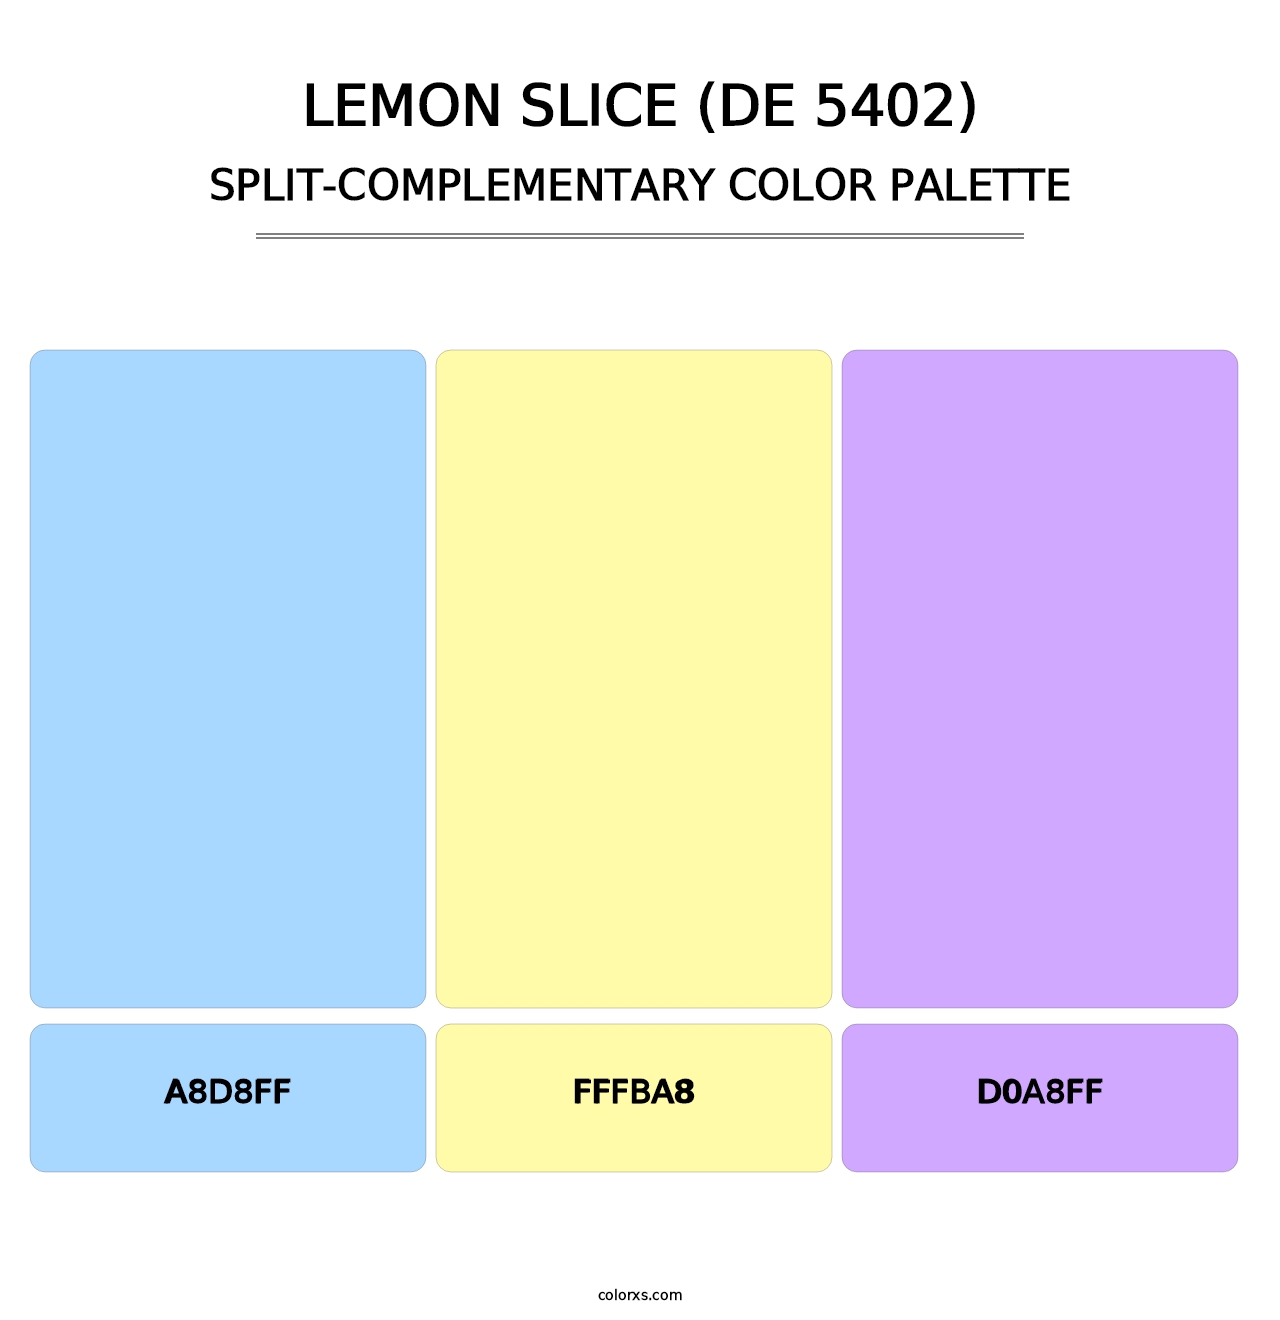 Lemon Slice (DE 5402) - Split-Complementary Color Palette